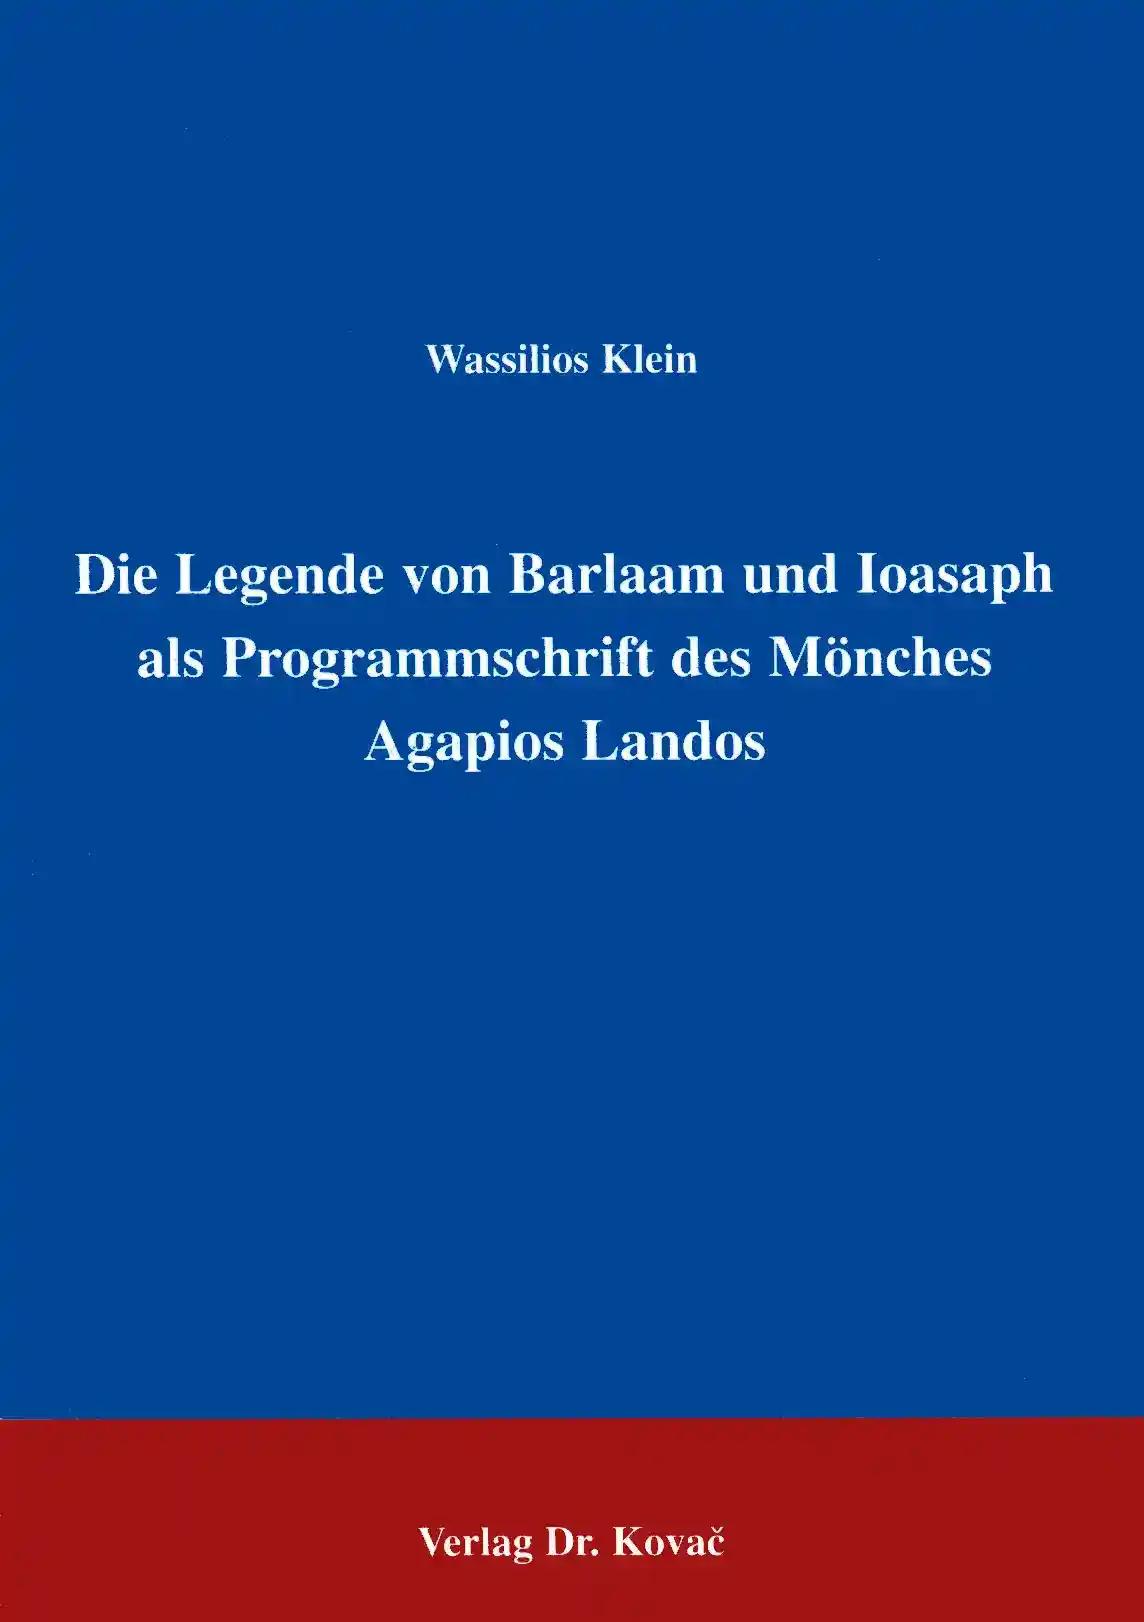 Die Legende von Barlaam und Ioasaph als Programmschrift des Mönches Agapios Landos . (THEOS - Studienreihe Theologische Forschungsergebnisse)